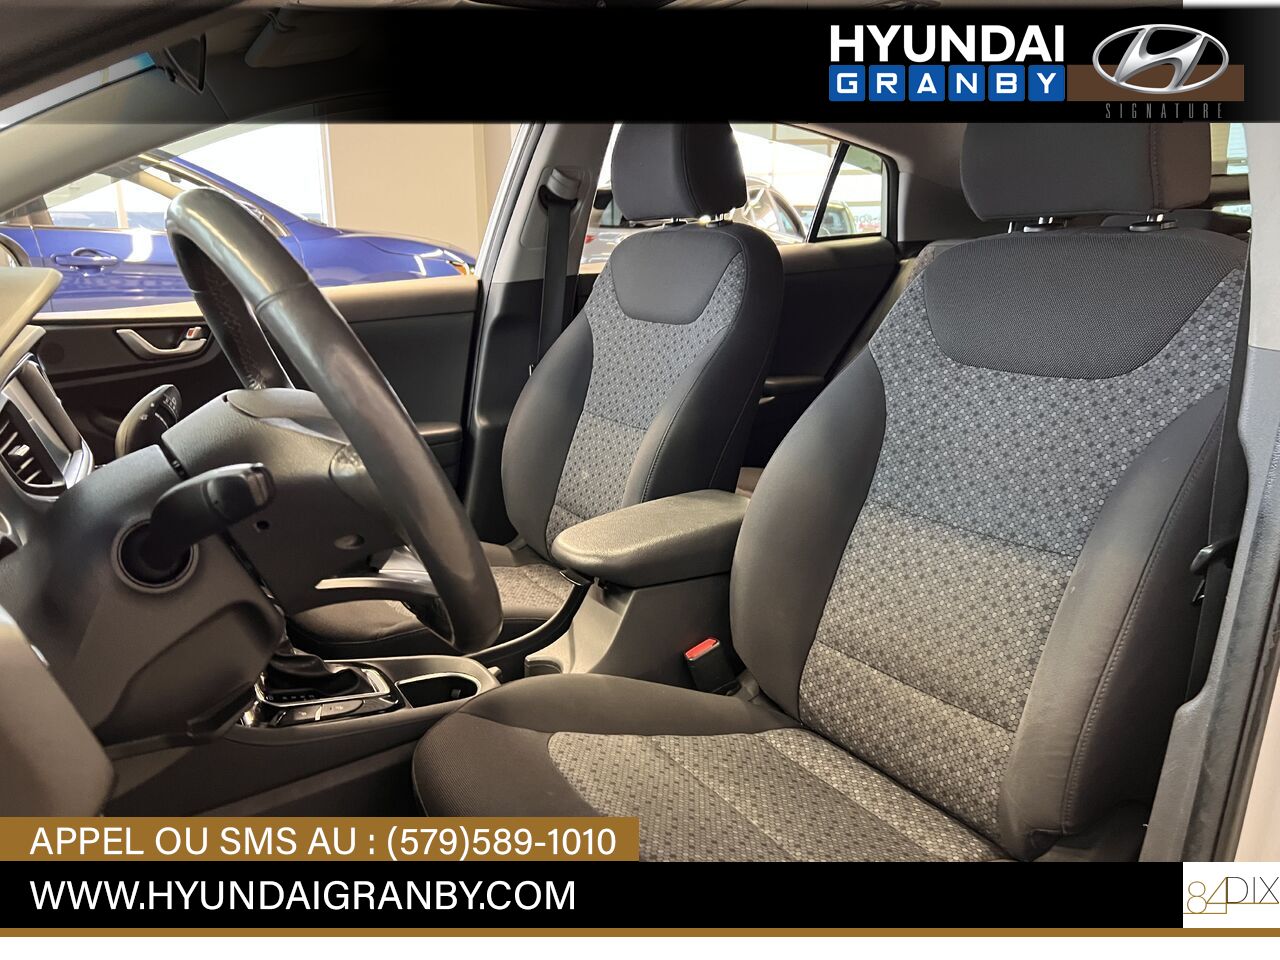 Hyundai Ioniq hybride 2017 Granby - photo #10